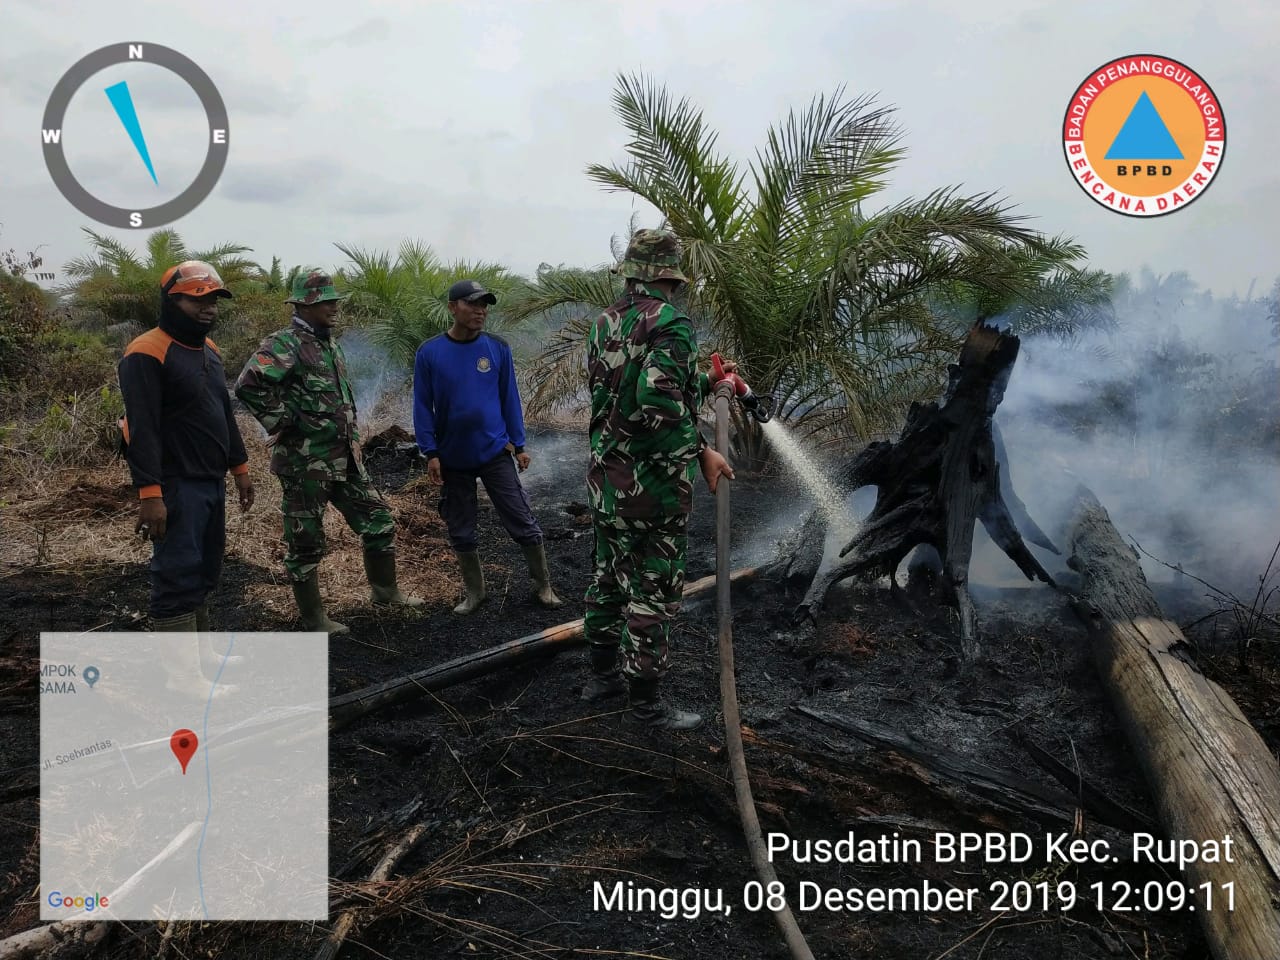 TRC BPBD Kec. Rupat bersama TNI, Polri dan Masyarakat melaksanakan pemadaman dan pendinginan Lahan 